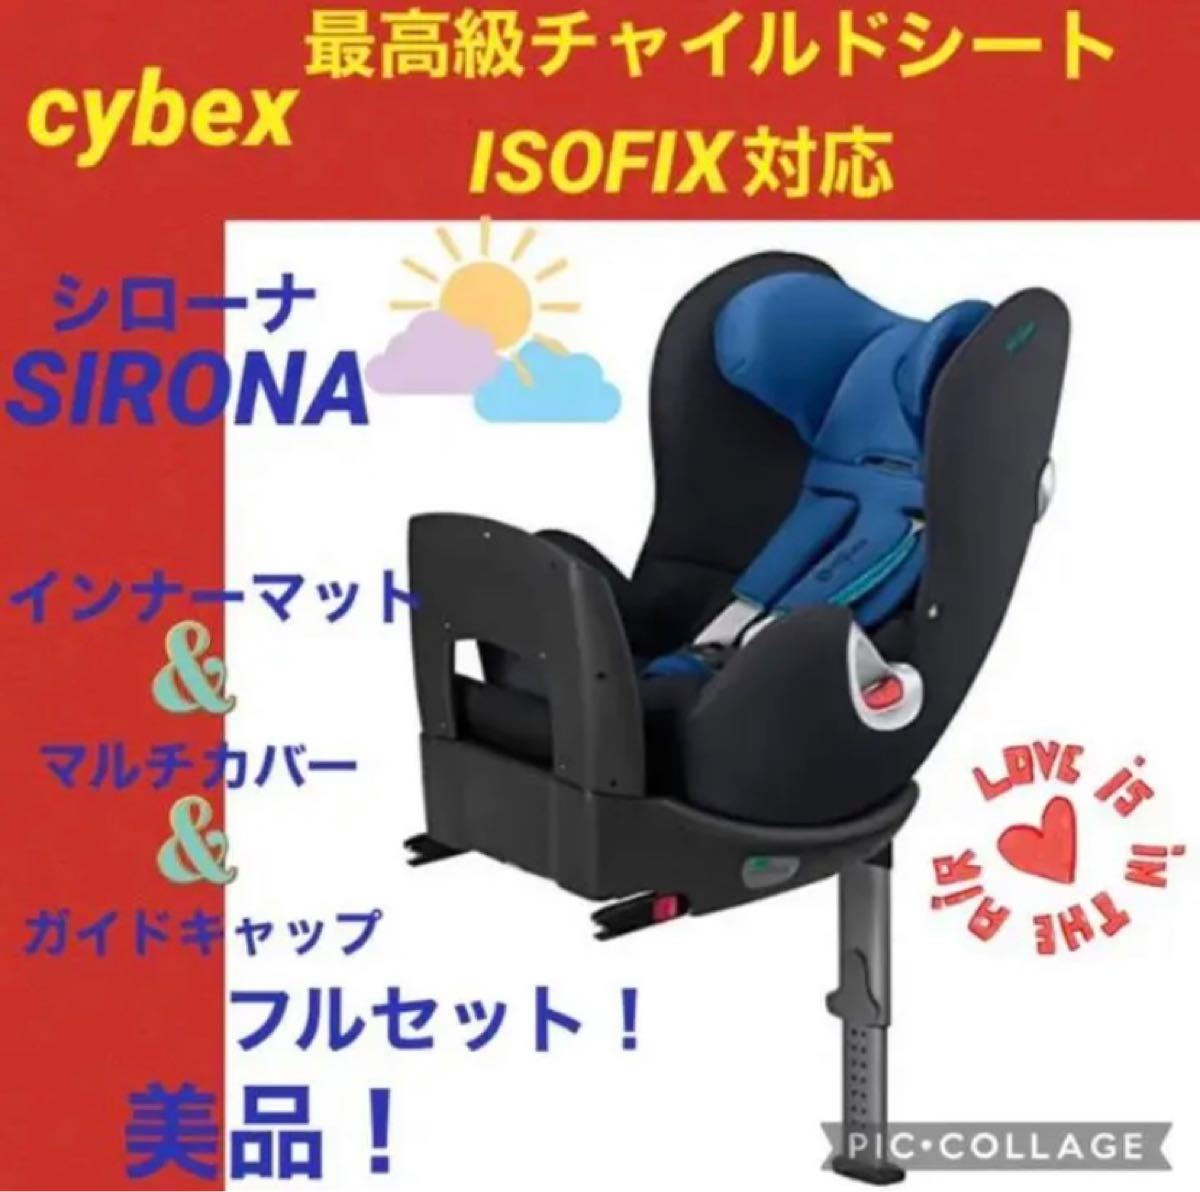 てとなりま cybex シローナ ISO-FIXの通販 by シーシャン's shop